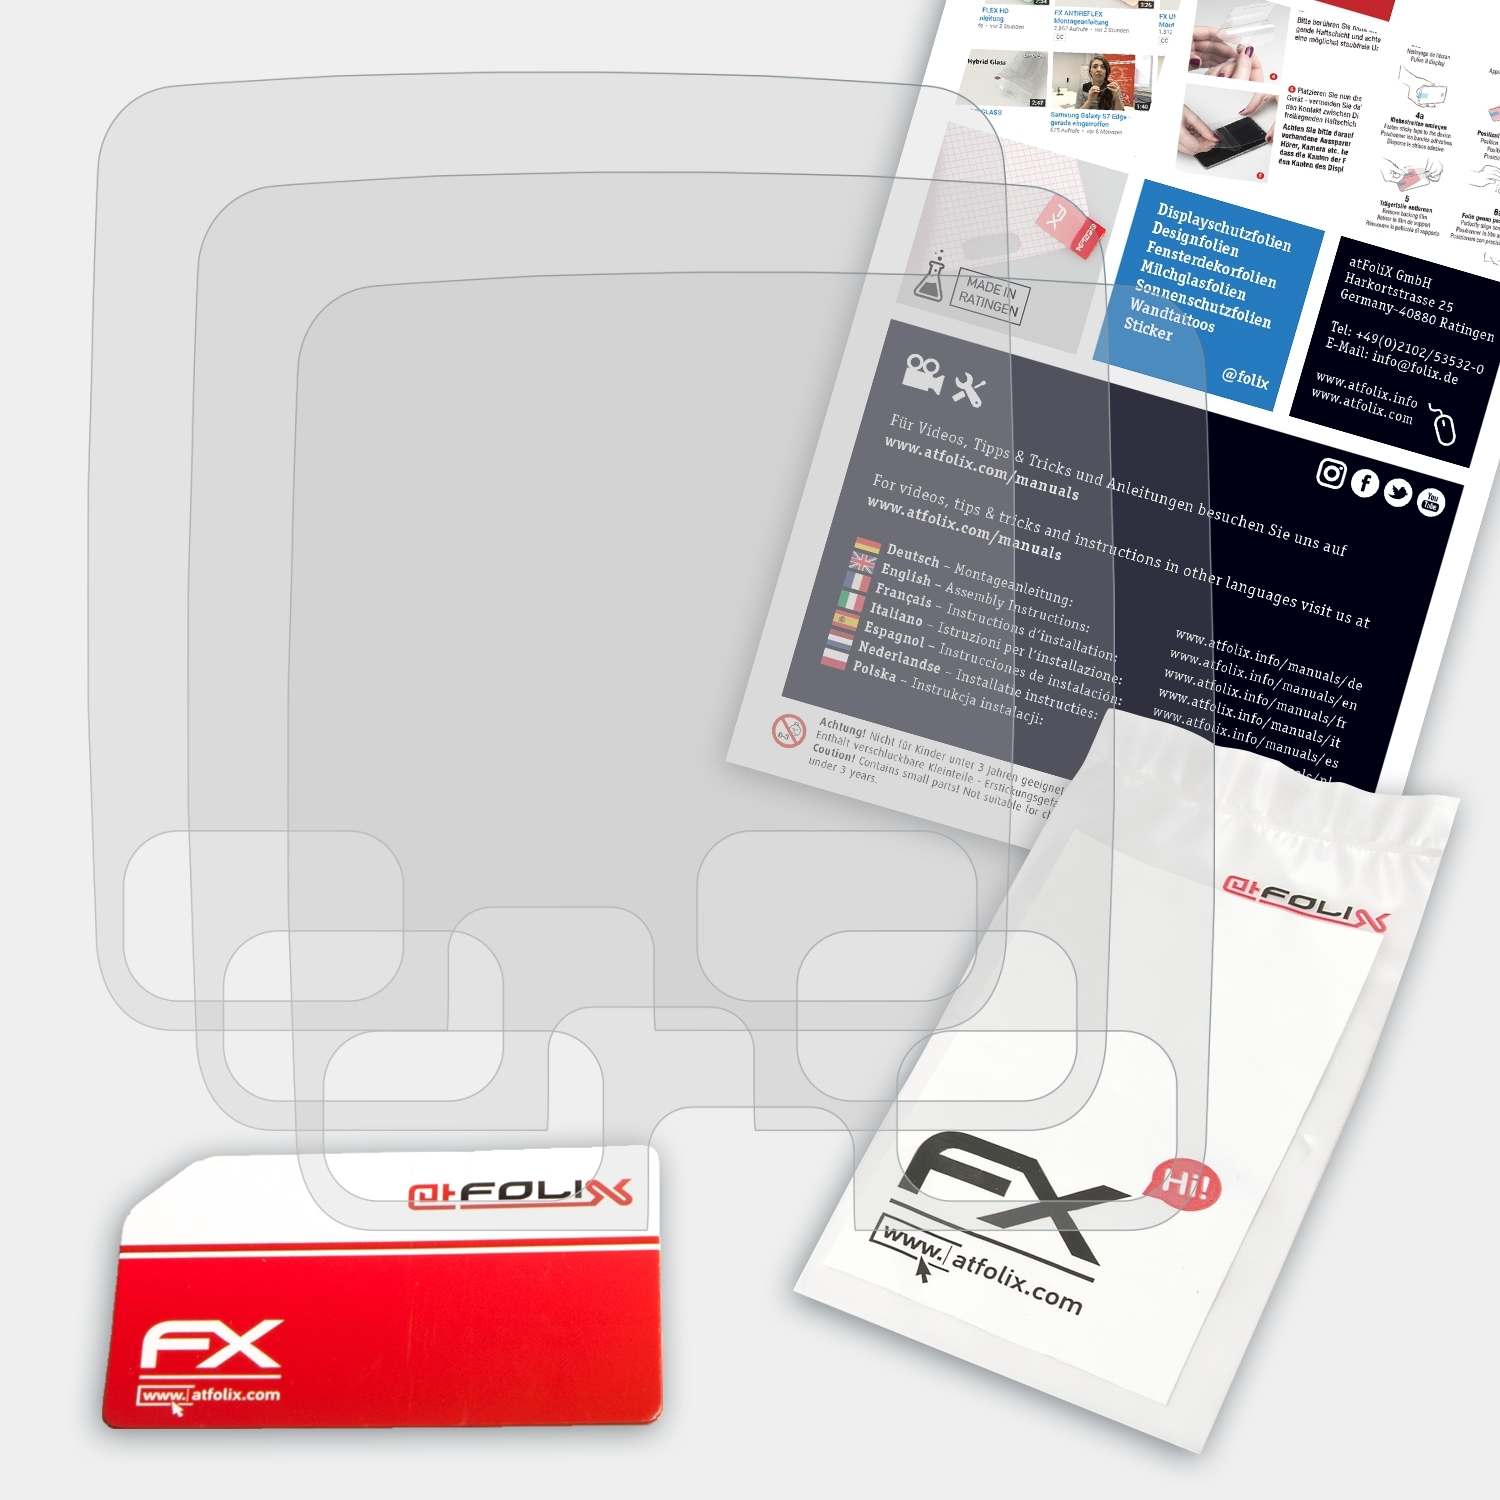 ATFOLIX 3x FX-Antireflex Displayschutz(für 580 Doro IP) Secure